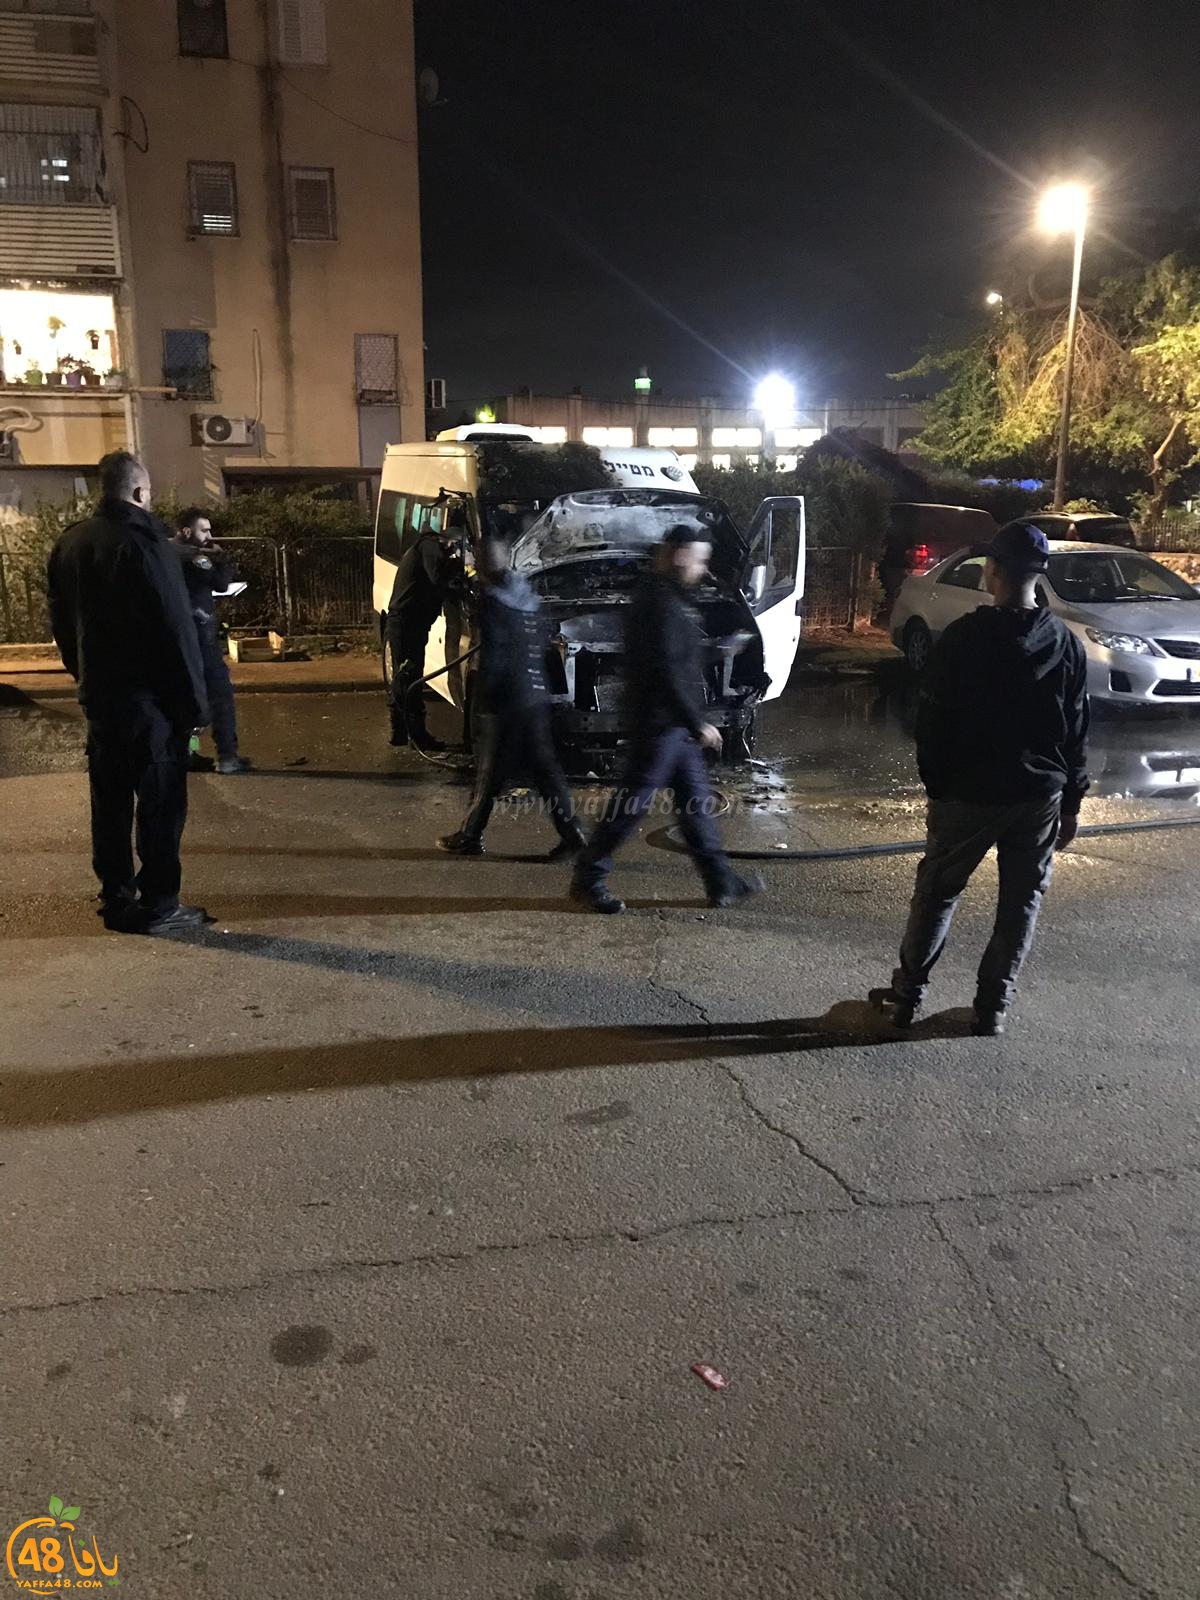  فيديو: احتراق مركبة في حي رمات اشكول باللد